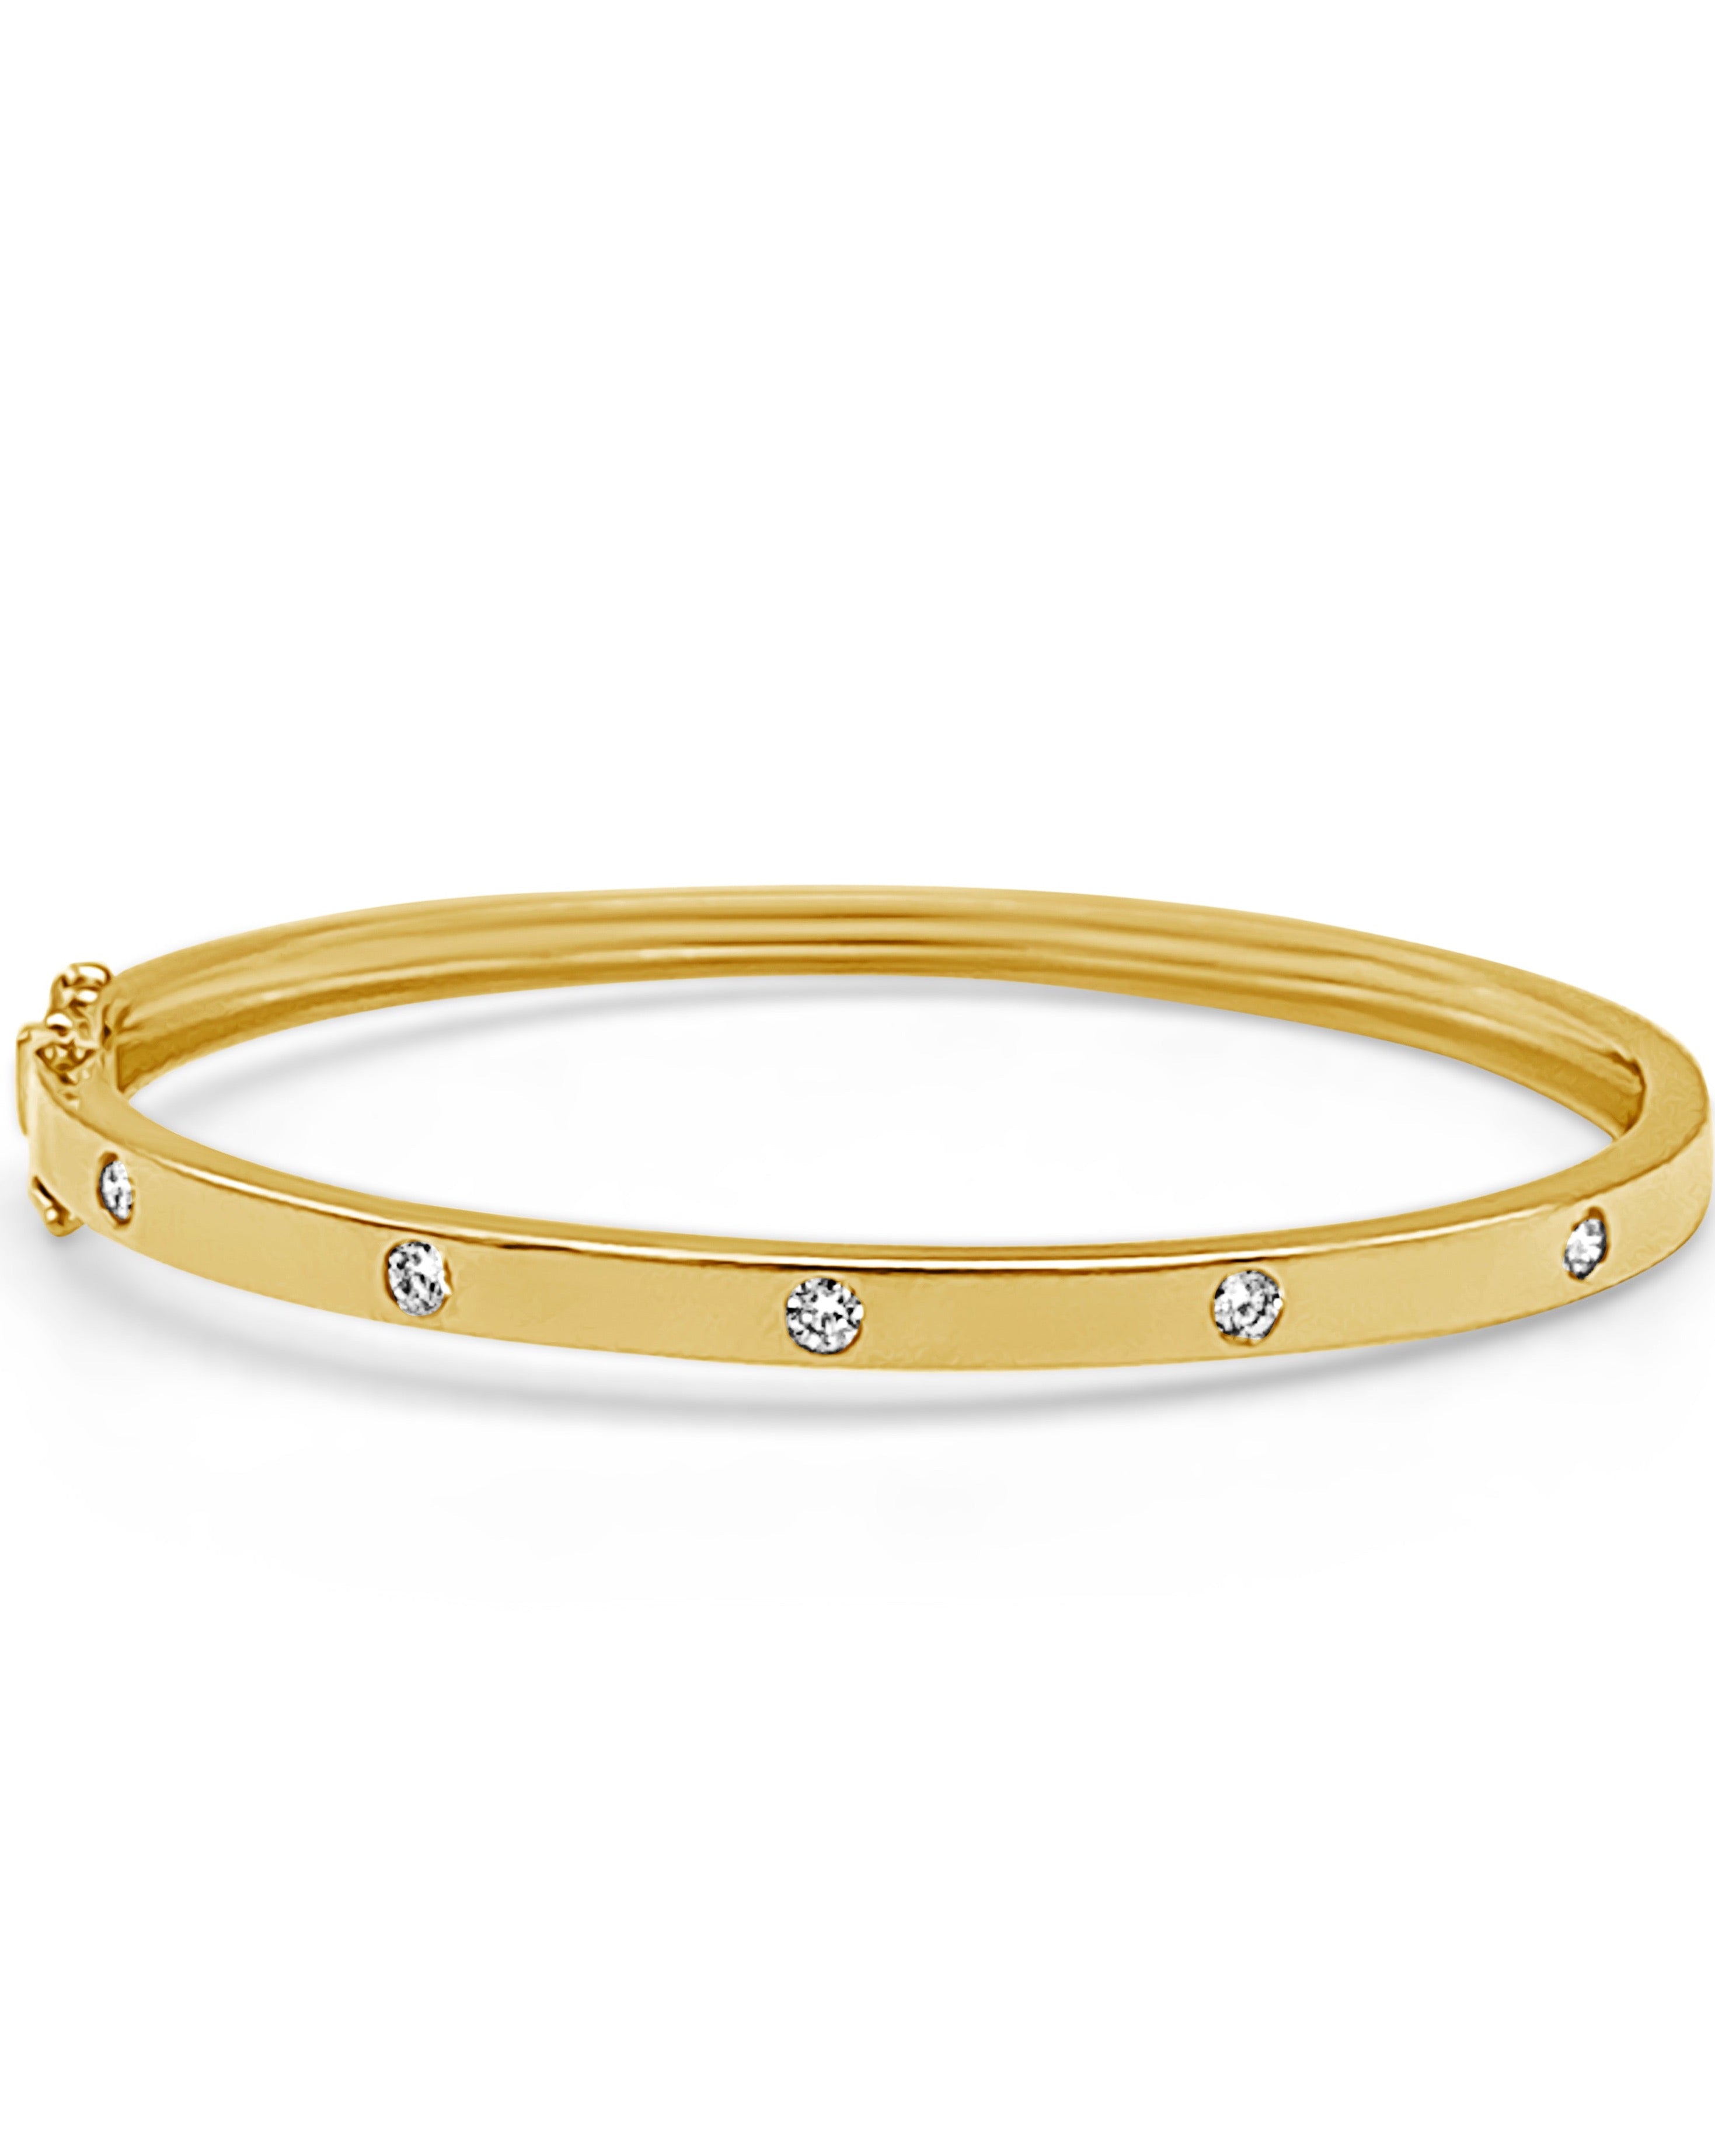 Buy quality Adele Wedding Diamond Bracelet for Women in 14K Gold in Pune